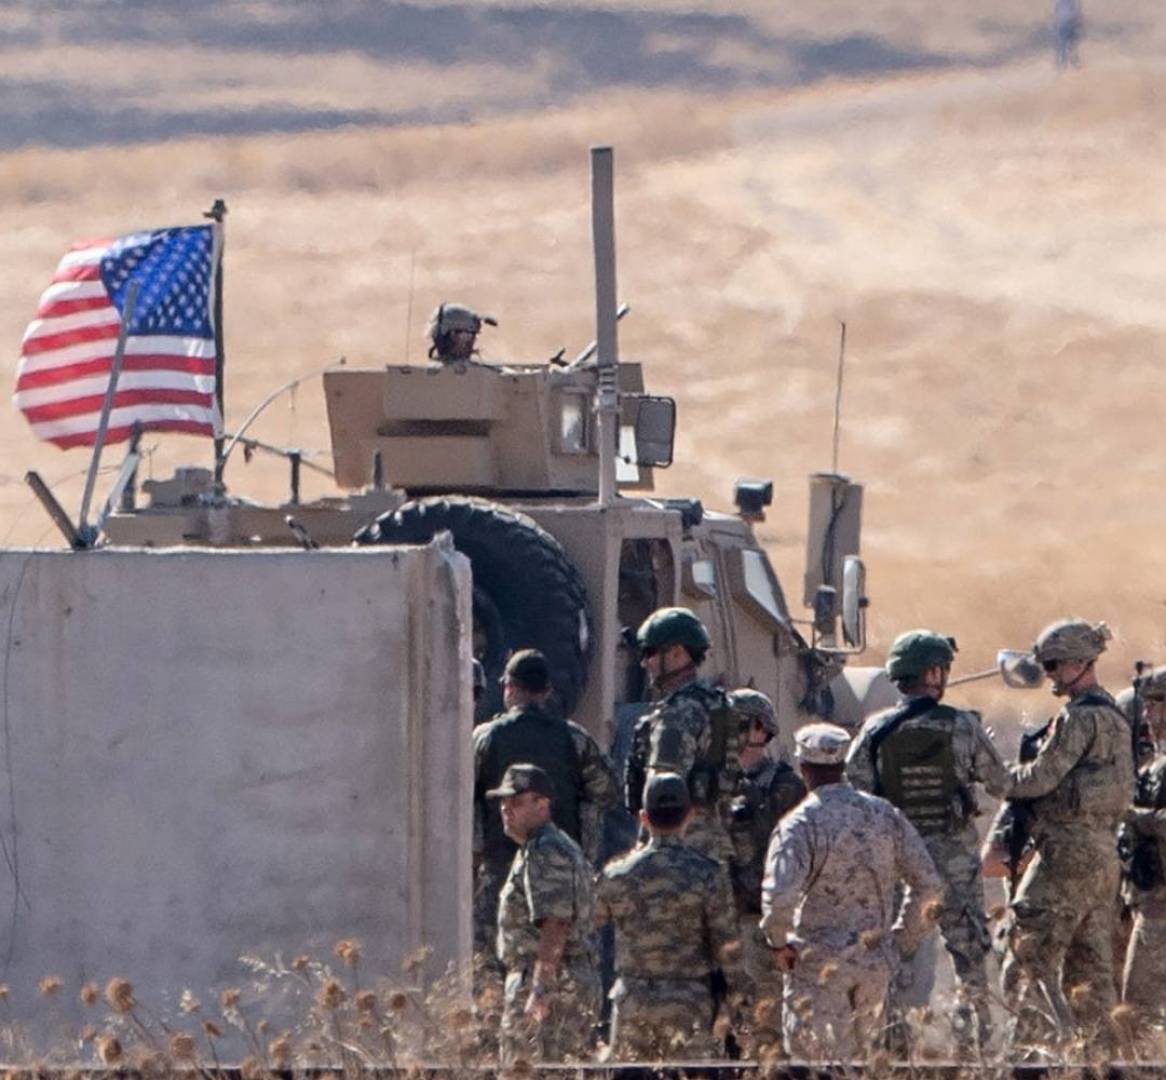 الجيش الأمريكي يقر بوقوع اصابات في صفوف قواته في هجوم صاروخي على قواعده في سوريا